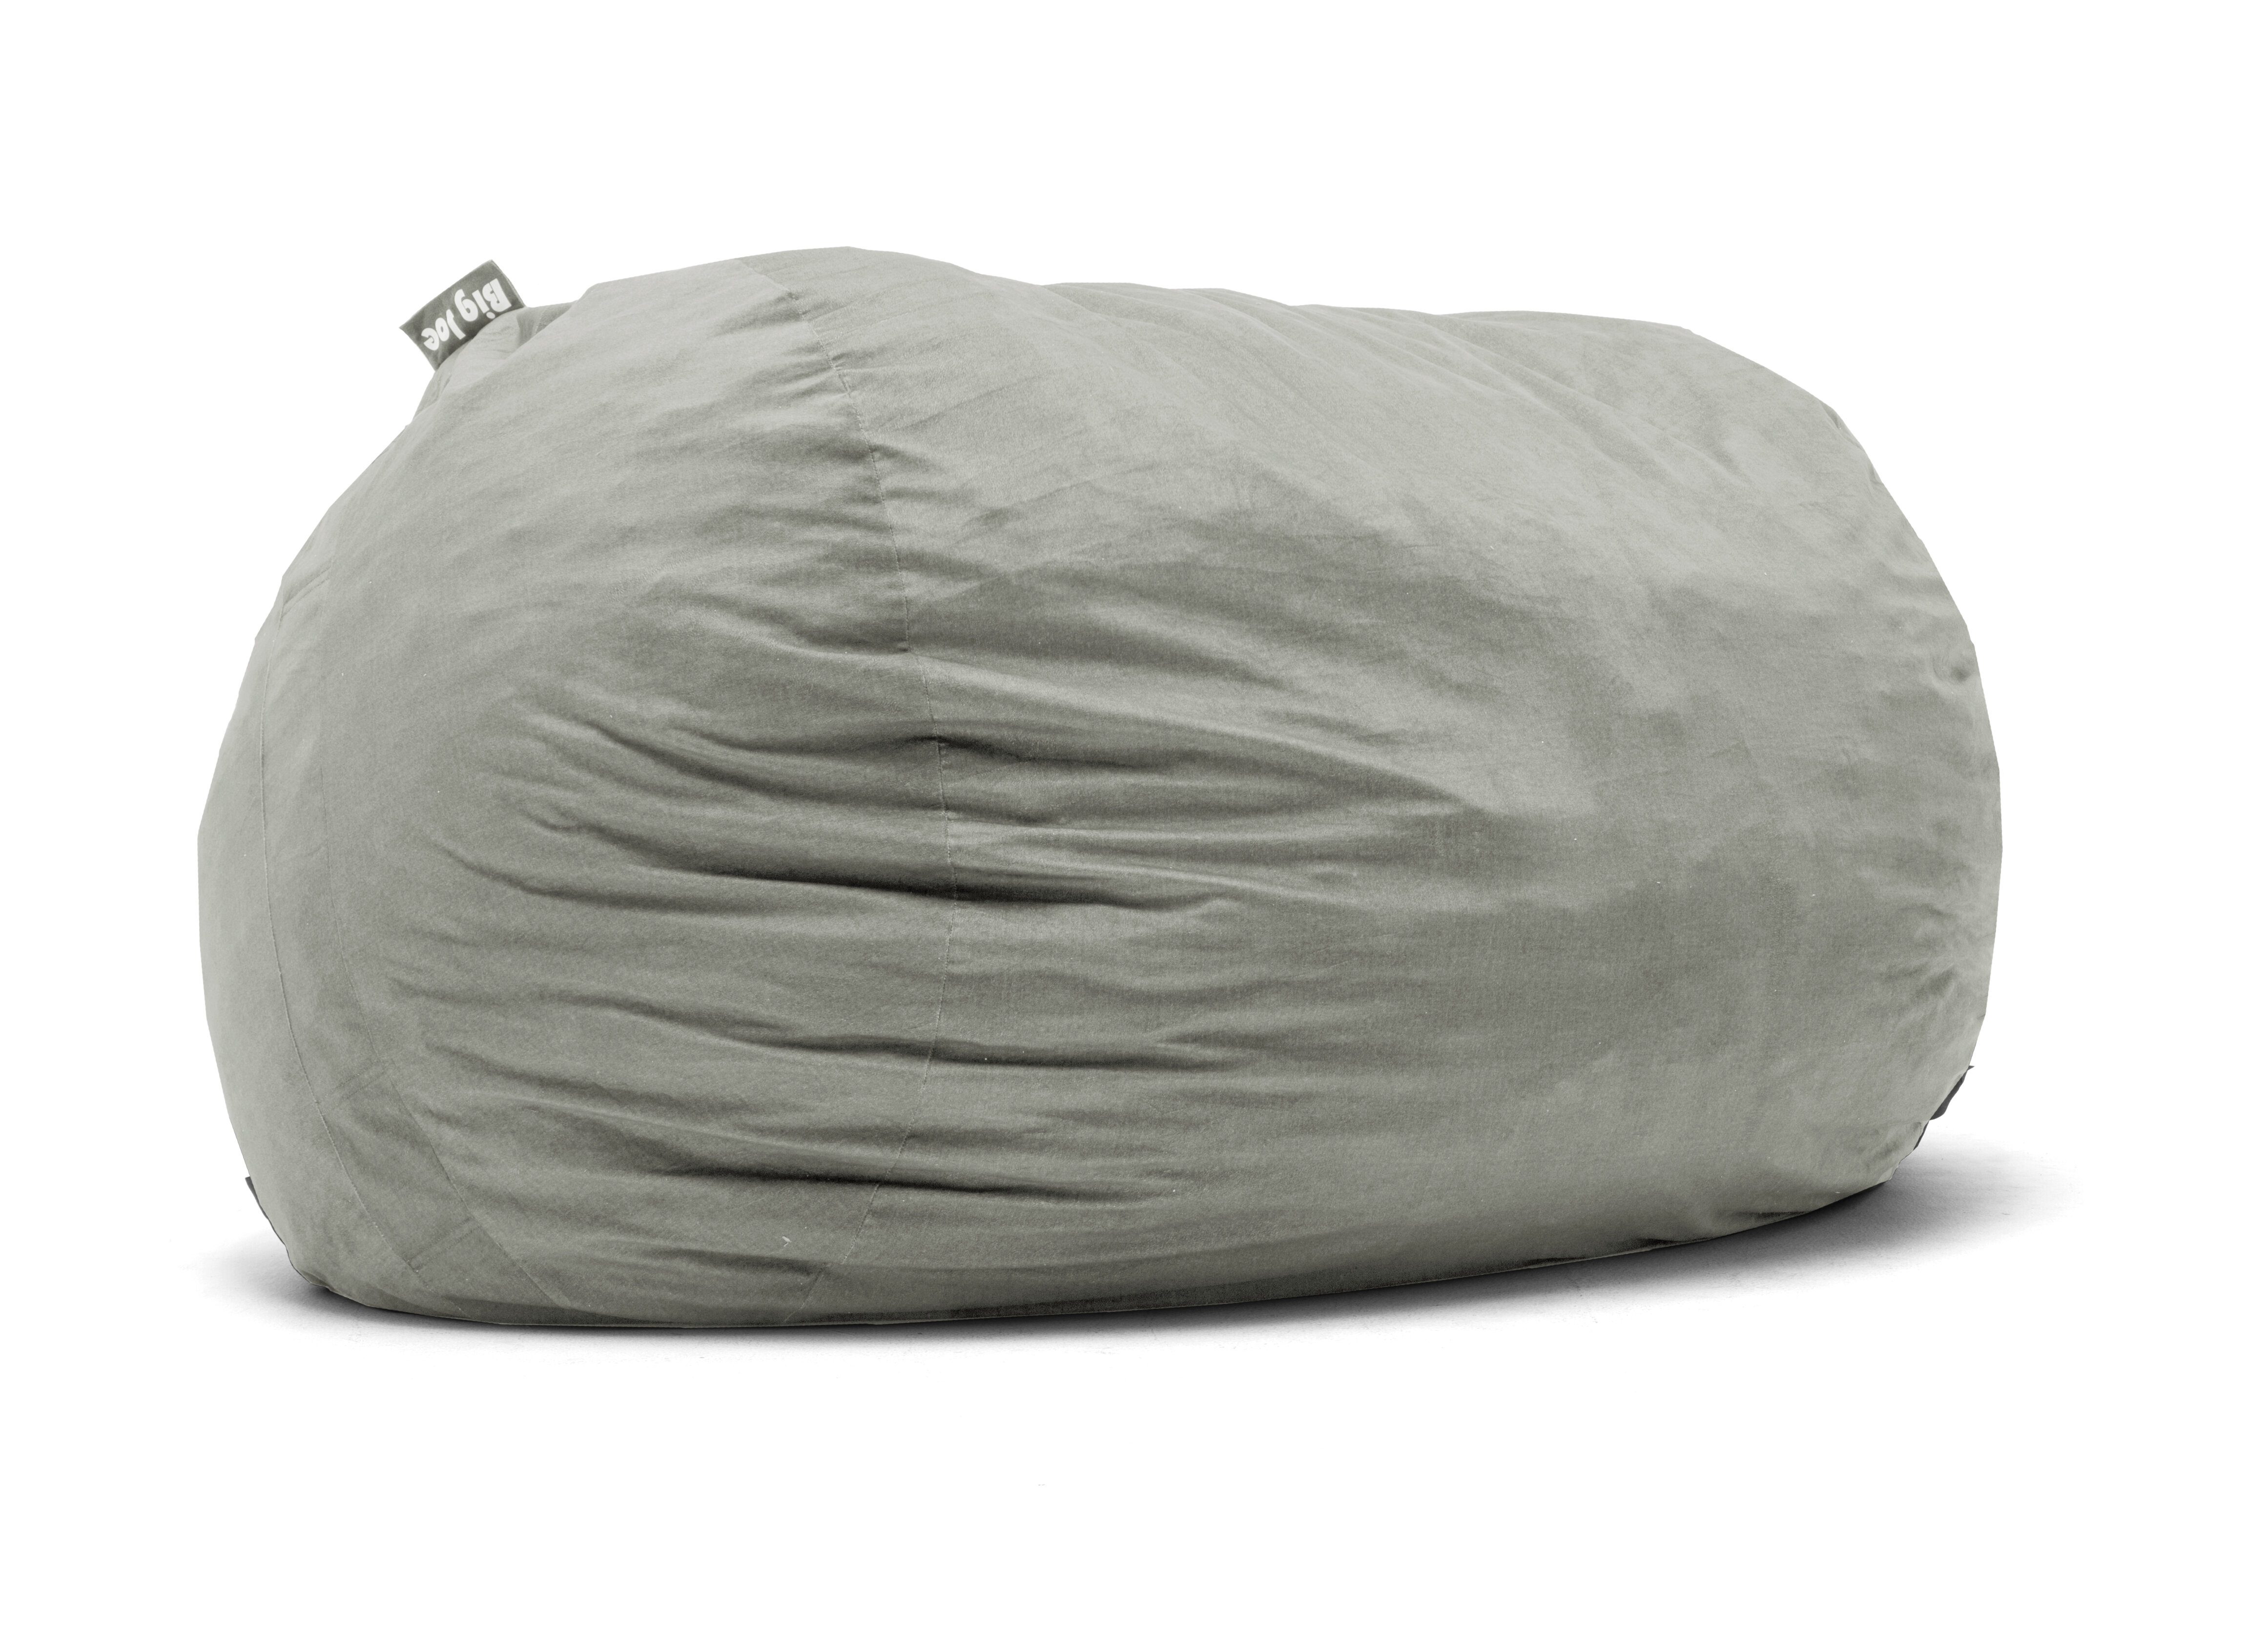 Comfort Research Big Joe Bean Bag Sofa Reviews Wayfair Ca